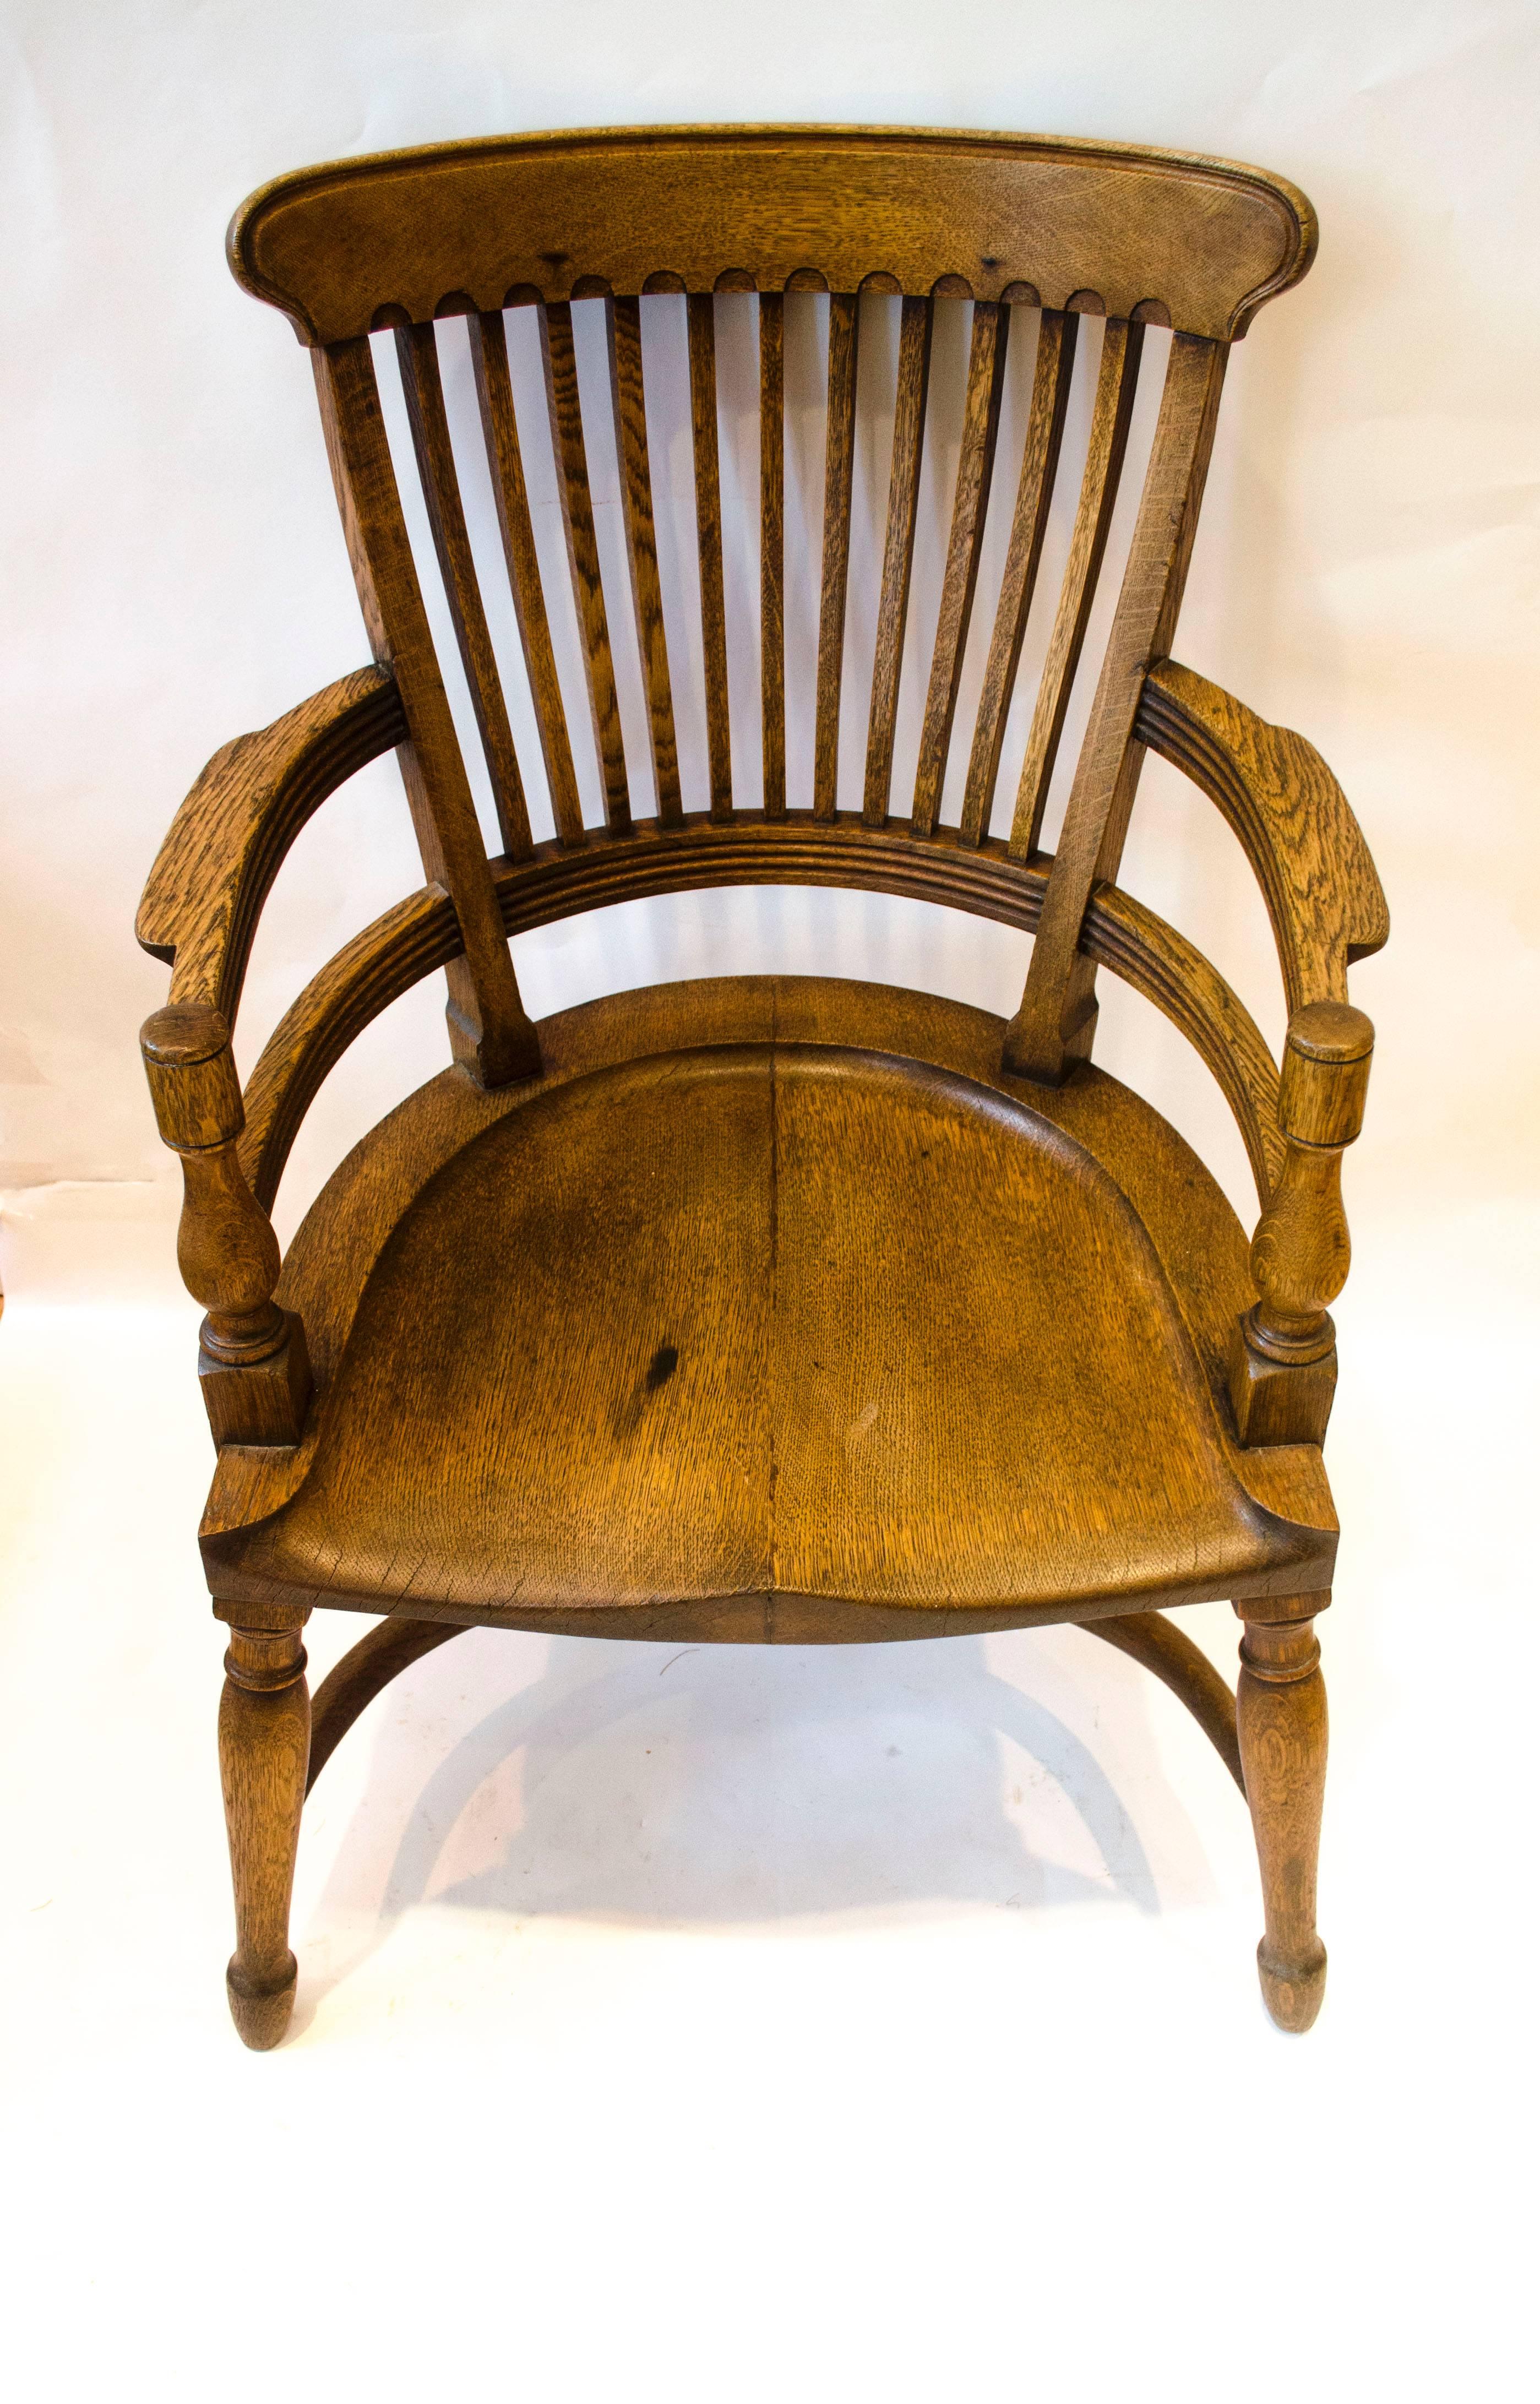 E. W. Godwin. Attr, Ein Sessel aus Eichenholz mit ergonomisch perfekt geformter Rückenlehne, ein unglaublich bequemer Sessel mit Krinolinenbügel.
Hergestellt von James Peddle oder Smee. 
Siehe die säkularen Möbel von E. W. Godwin von Susan Weber